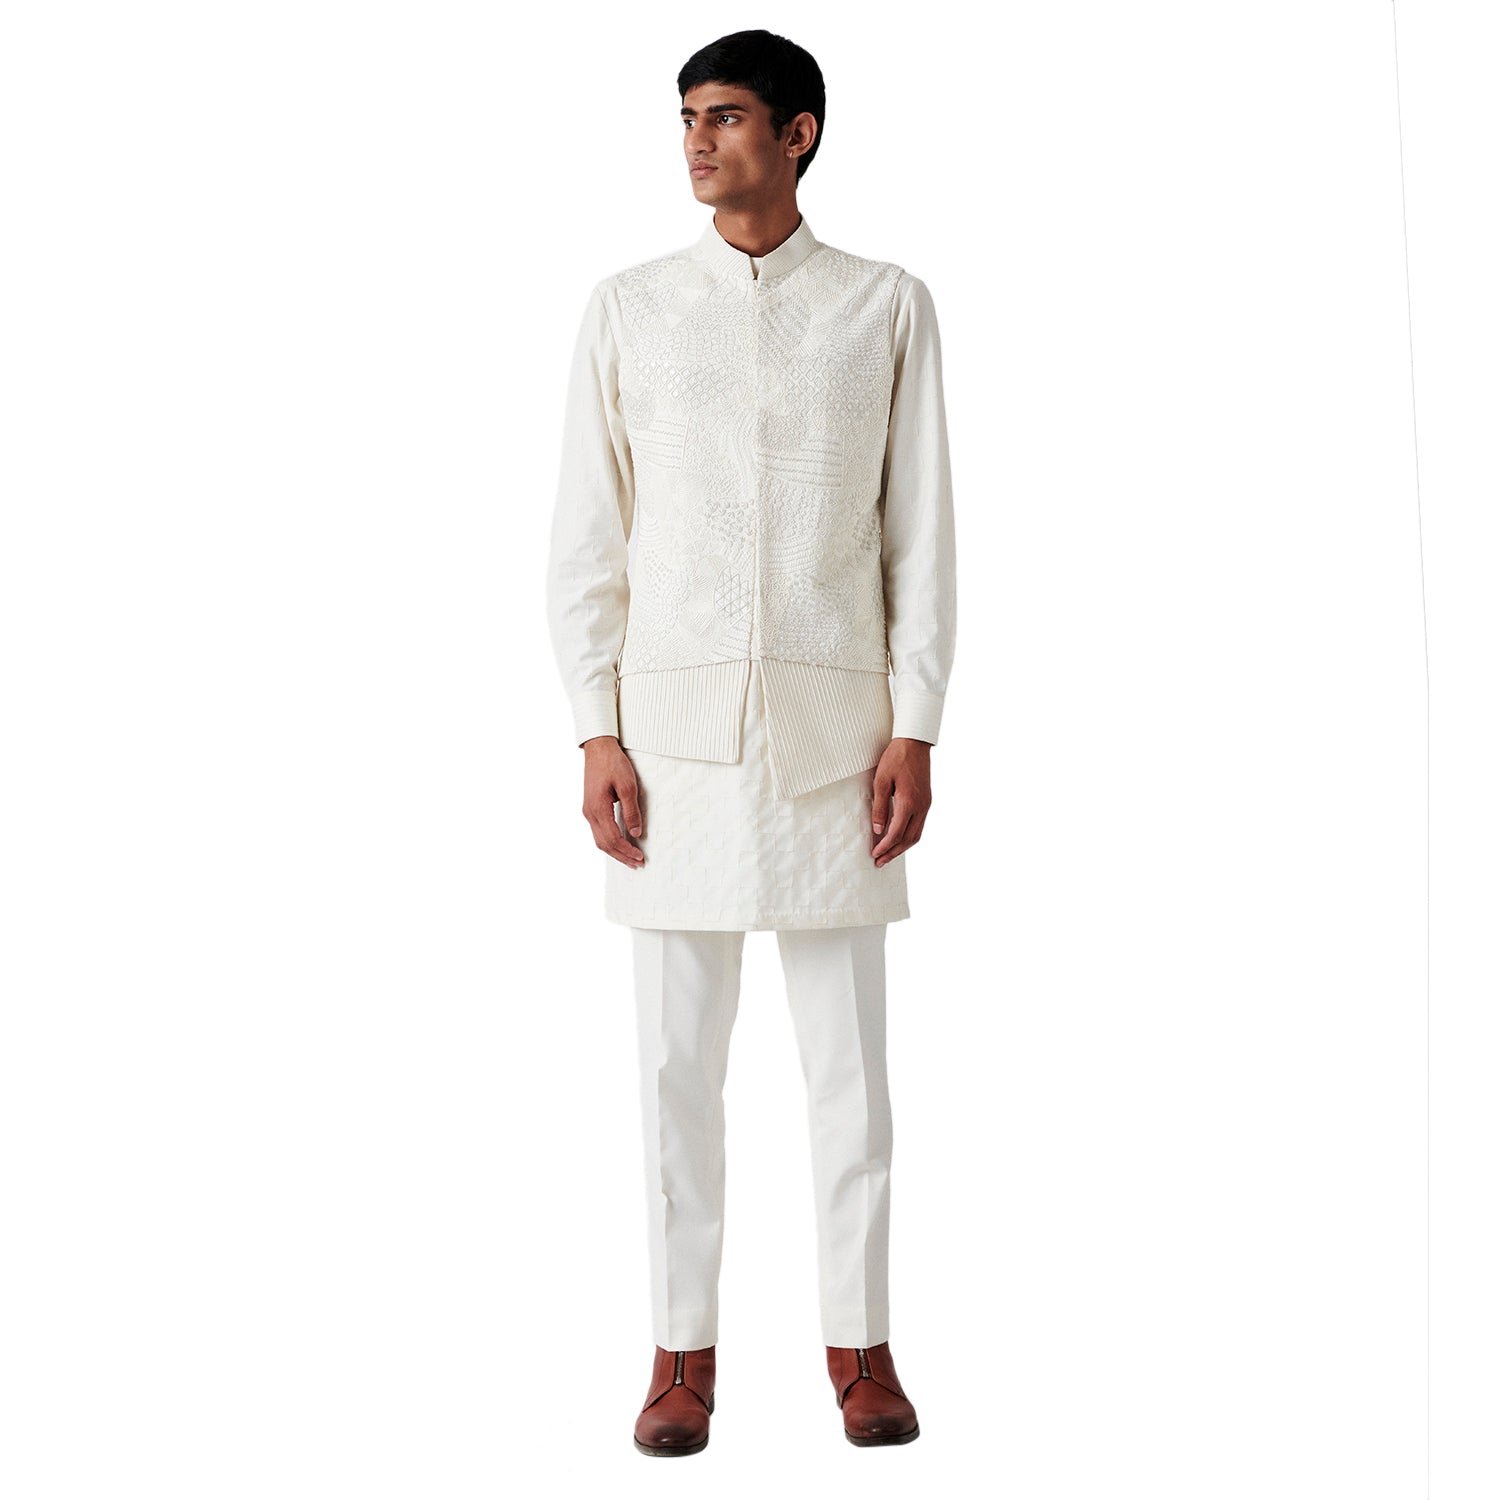 Embroidered White Sleeveless Jacket